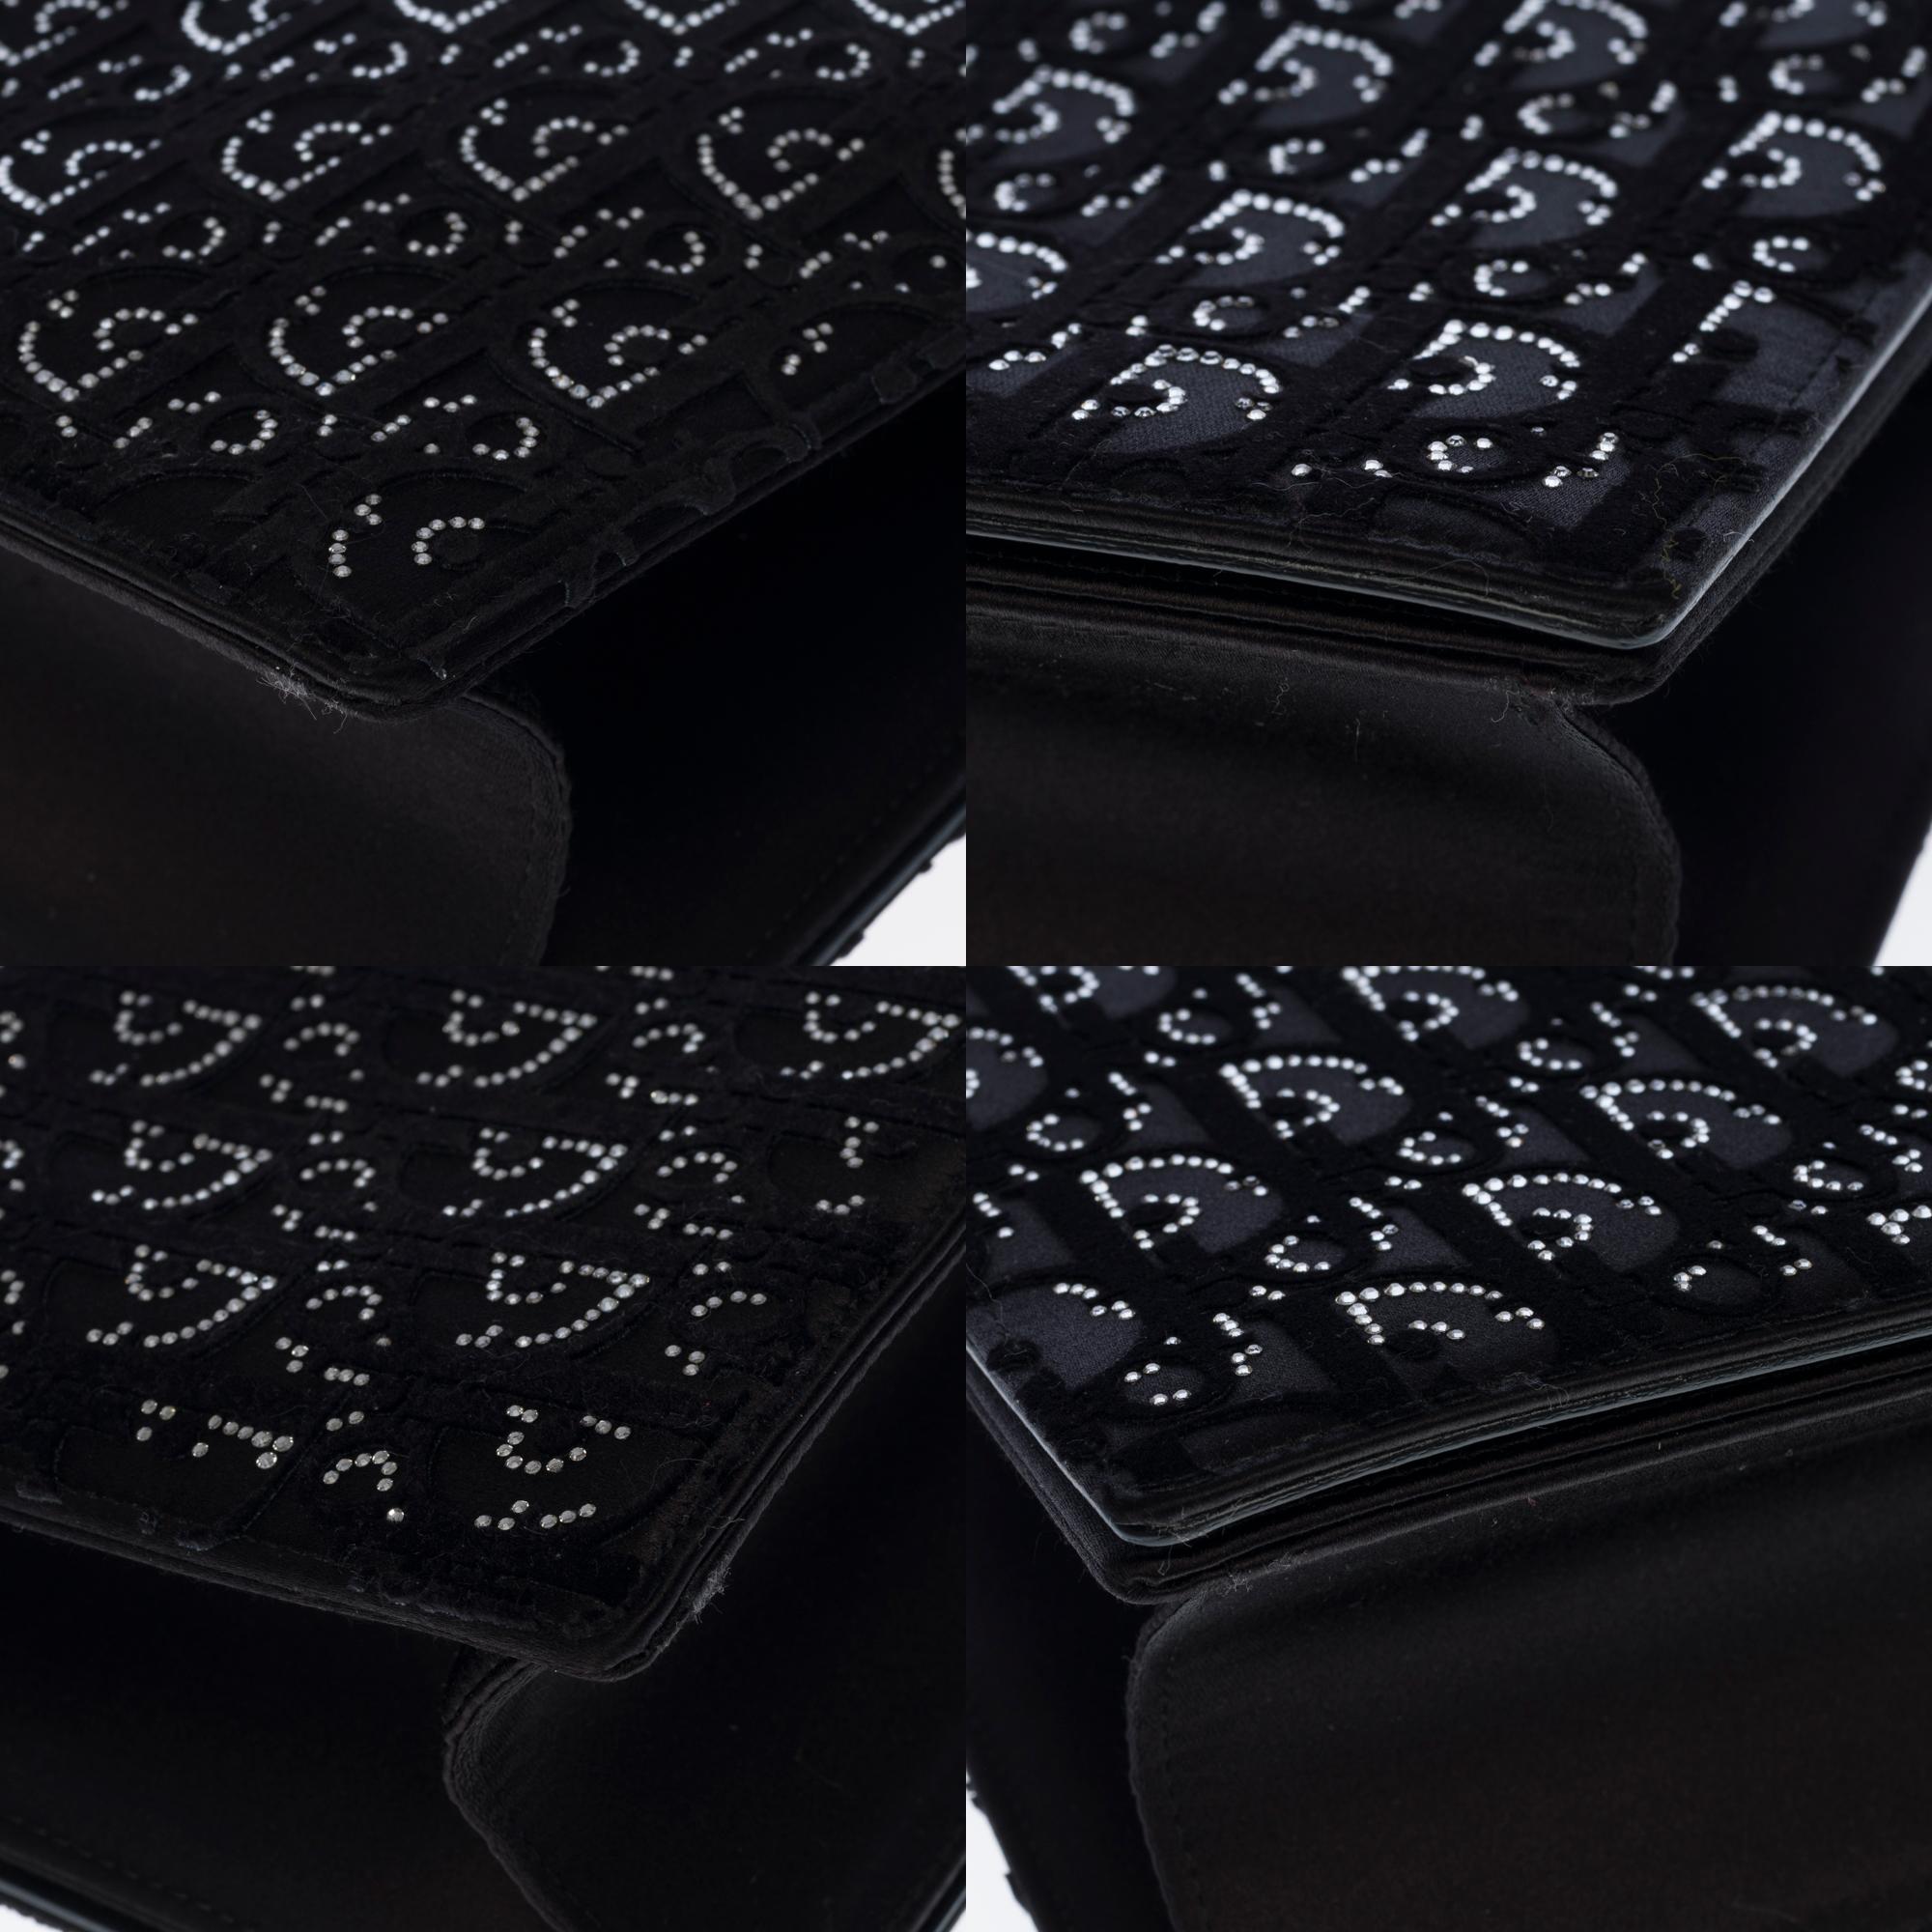 Christian Dior Diorama Shoulder bag in black velvet and crystals, SHW 4